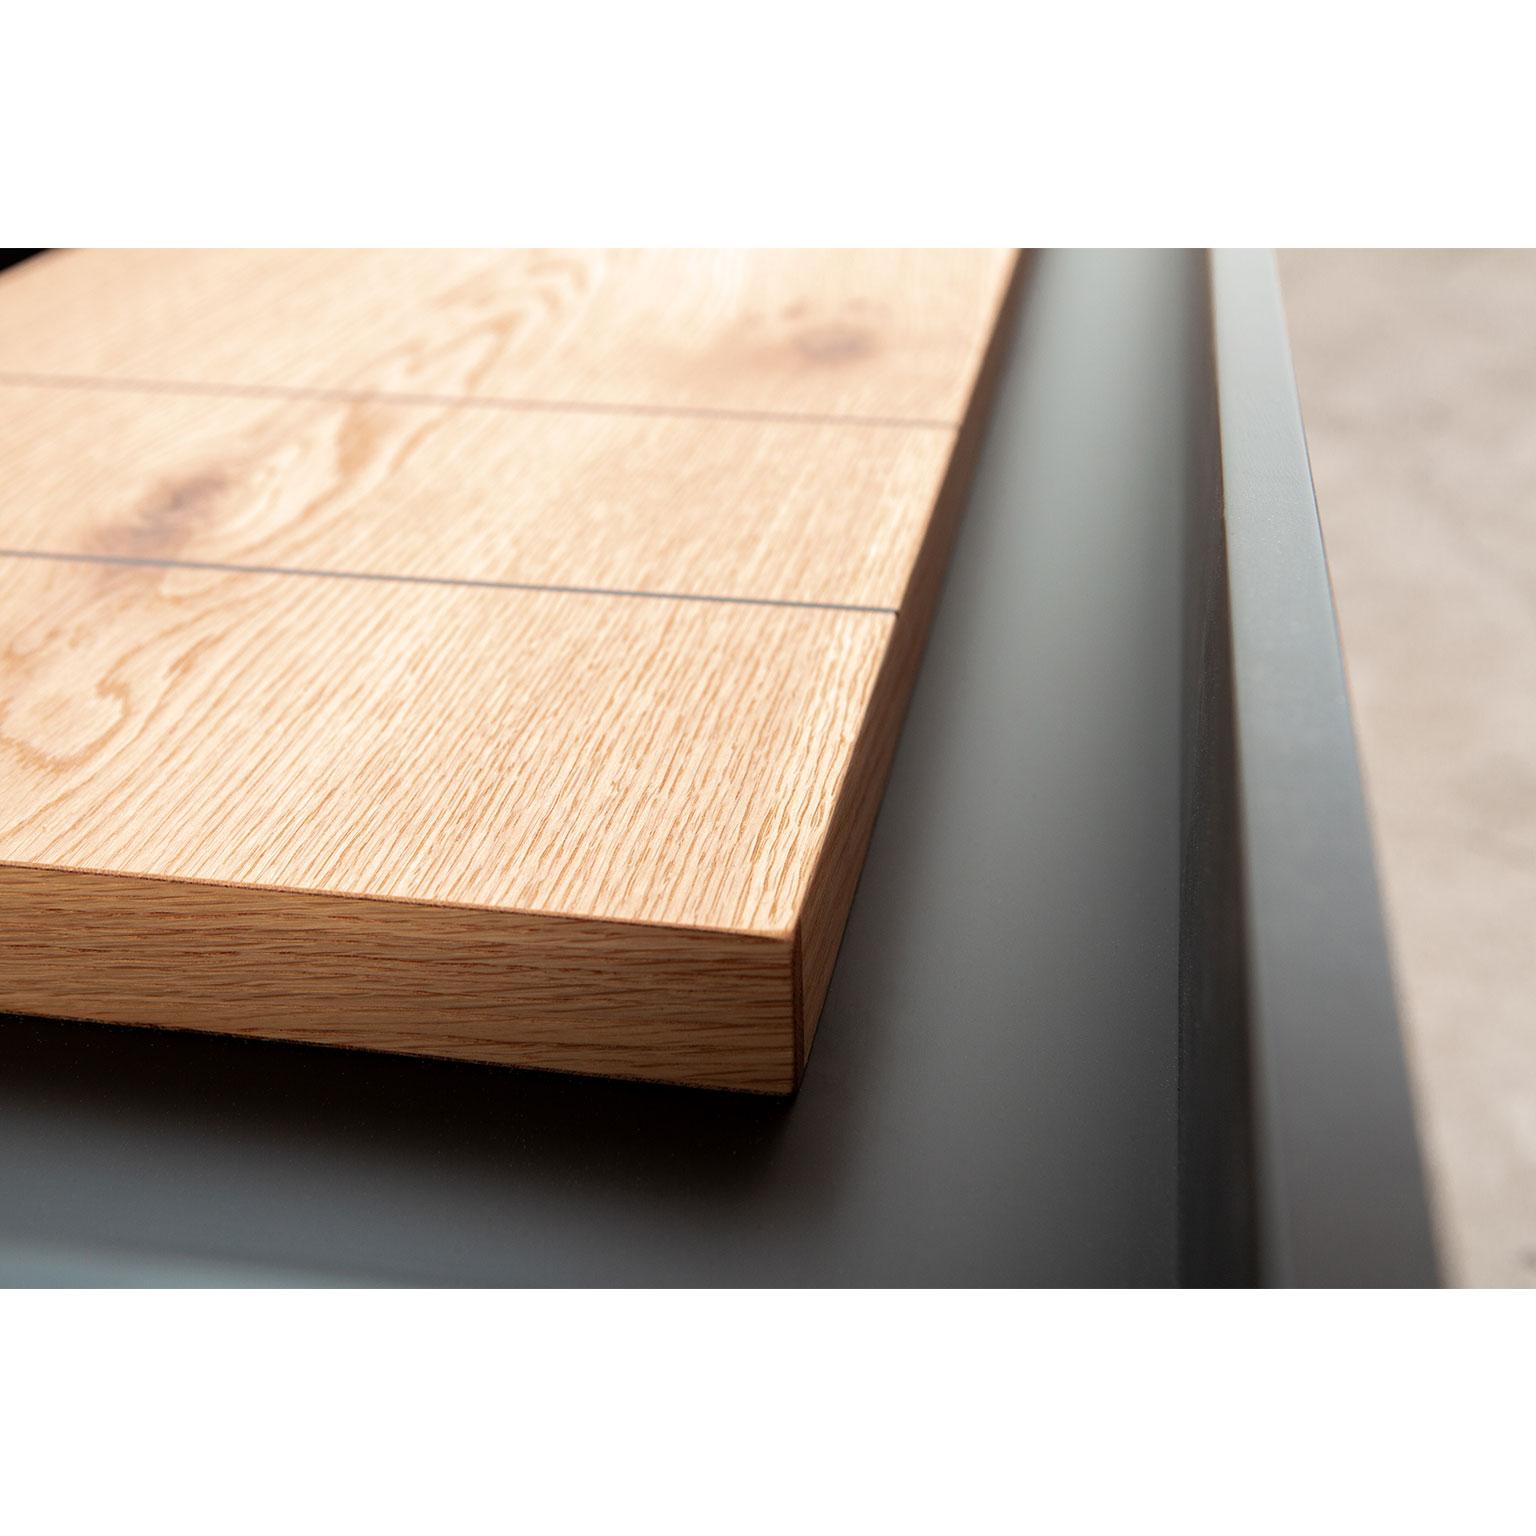 shuffleboard table design